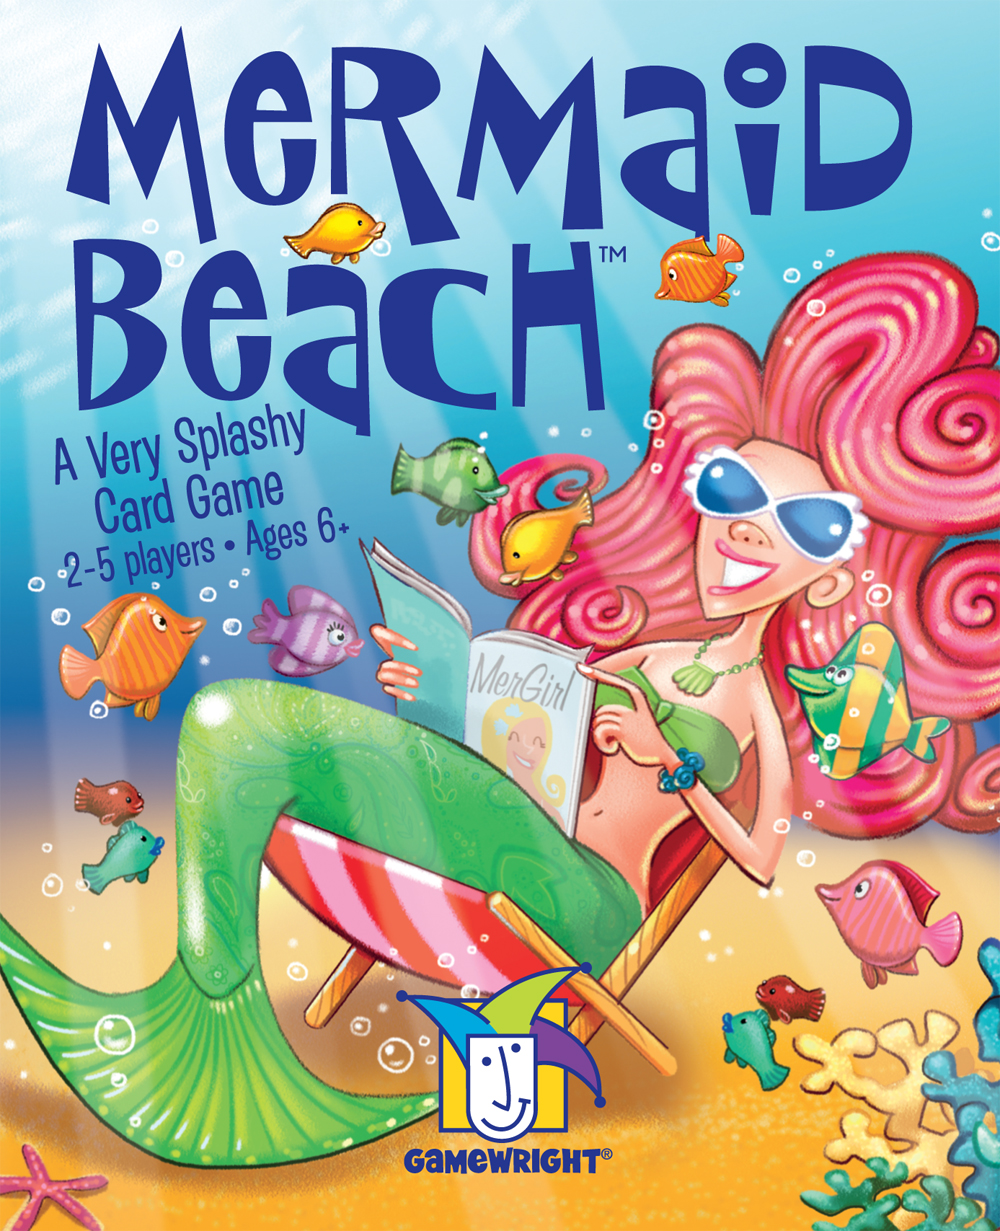 Mermaid BeachTM